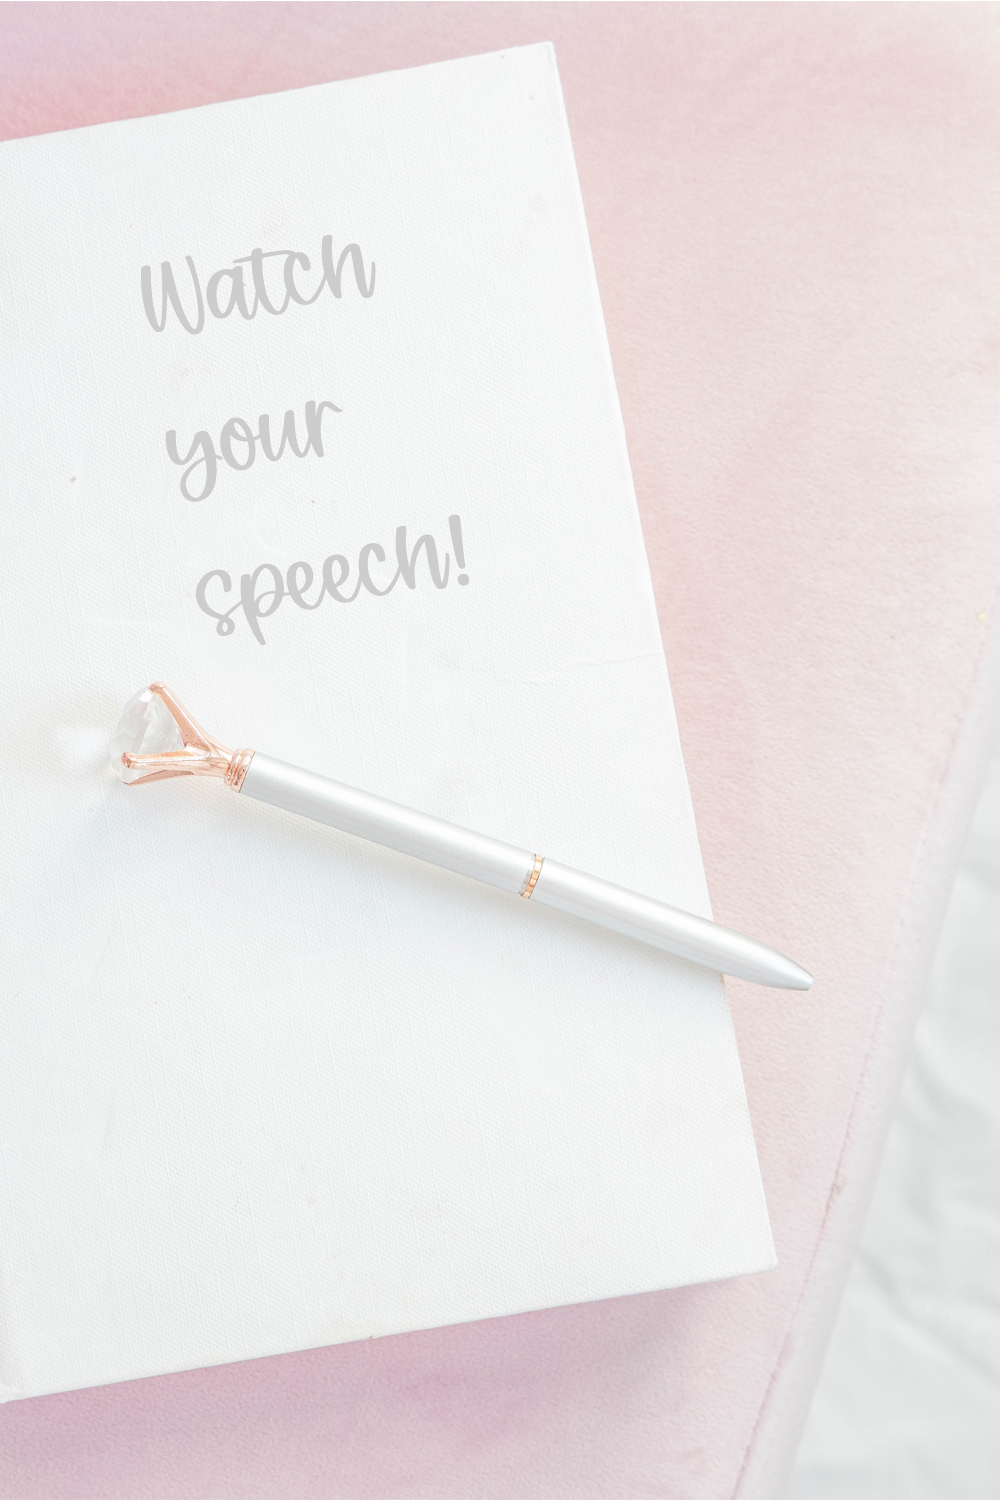 Watch Your Speech